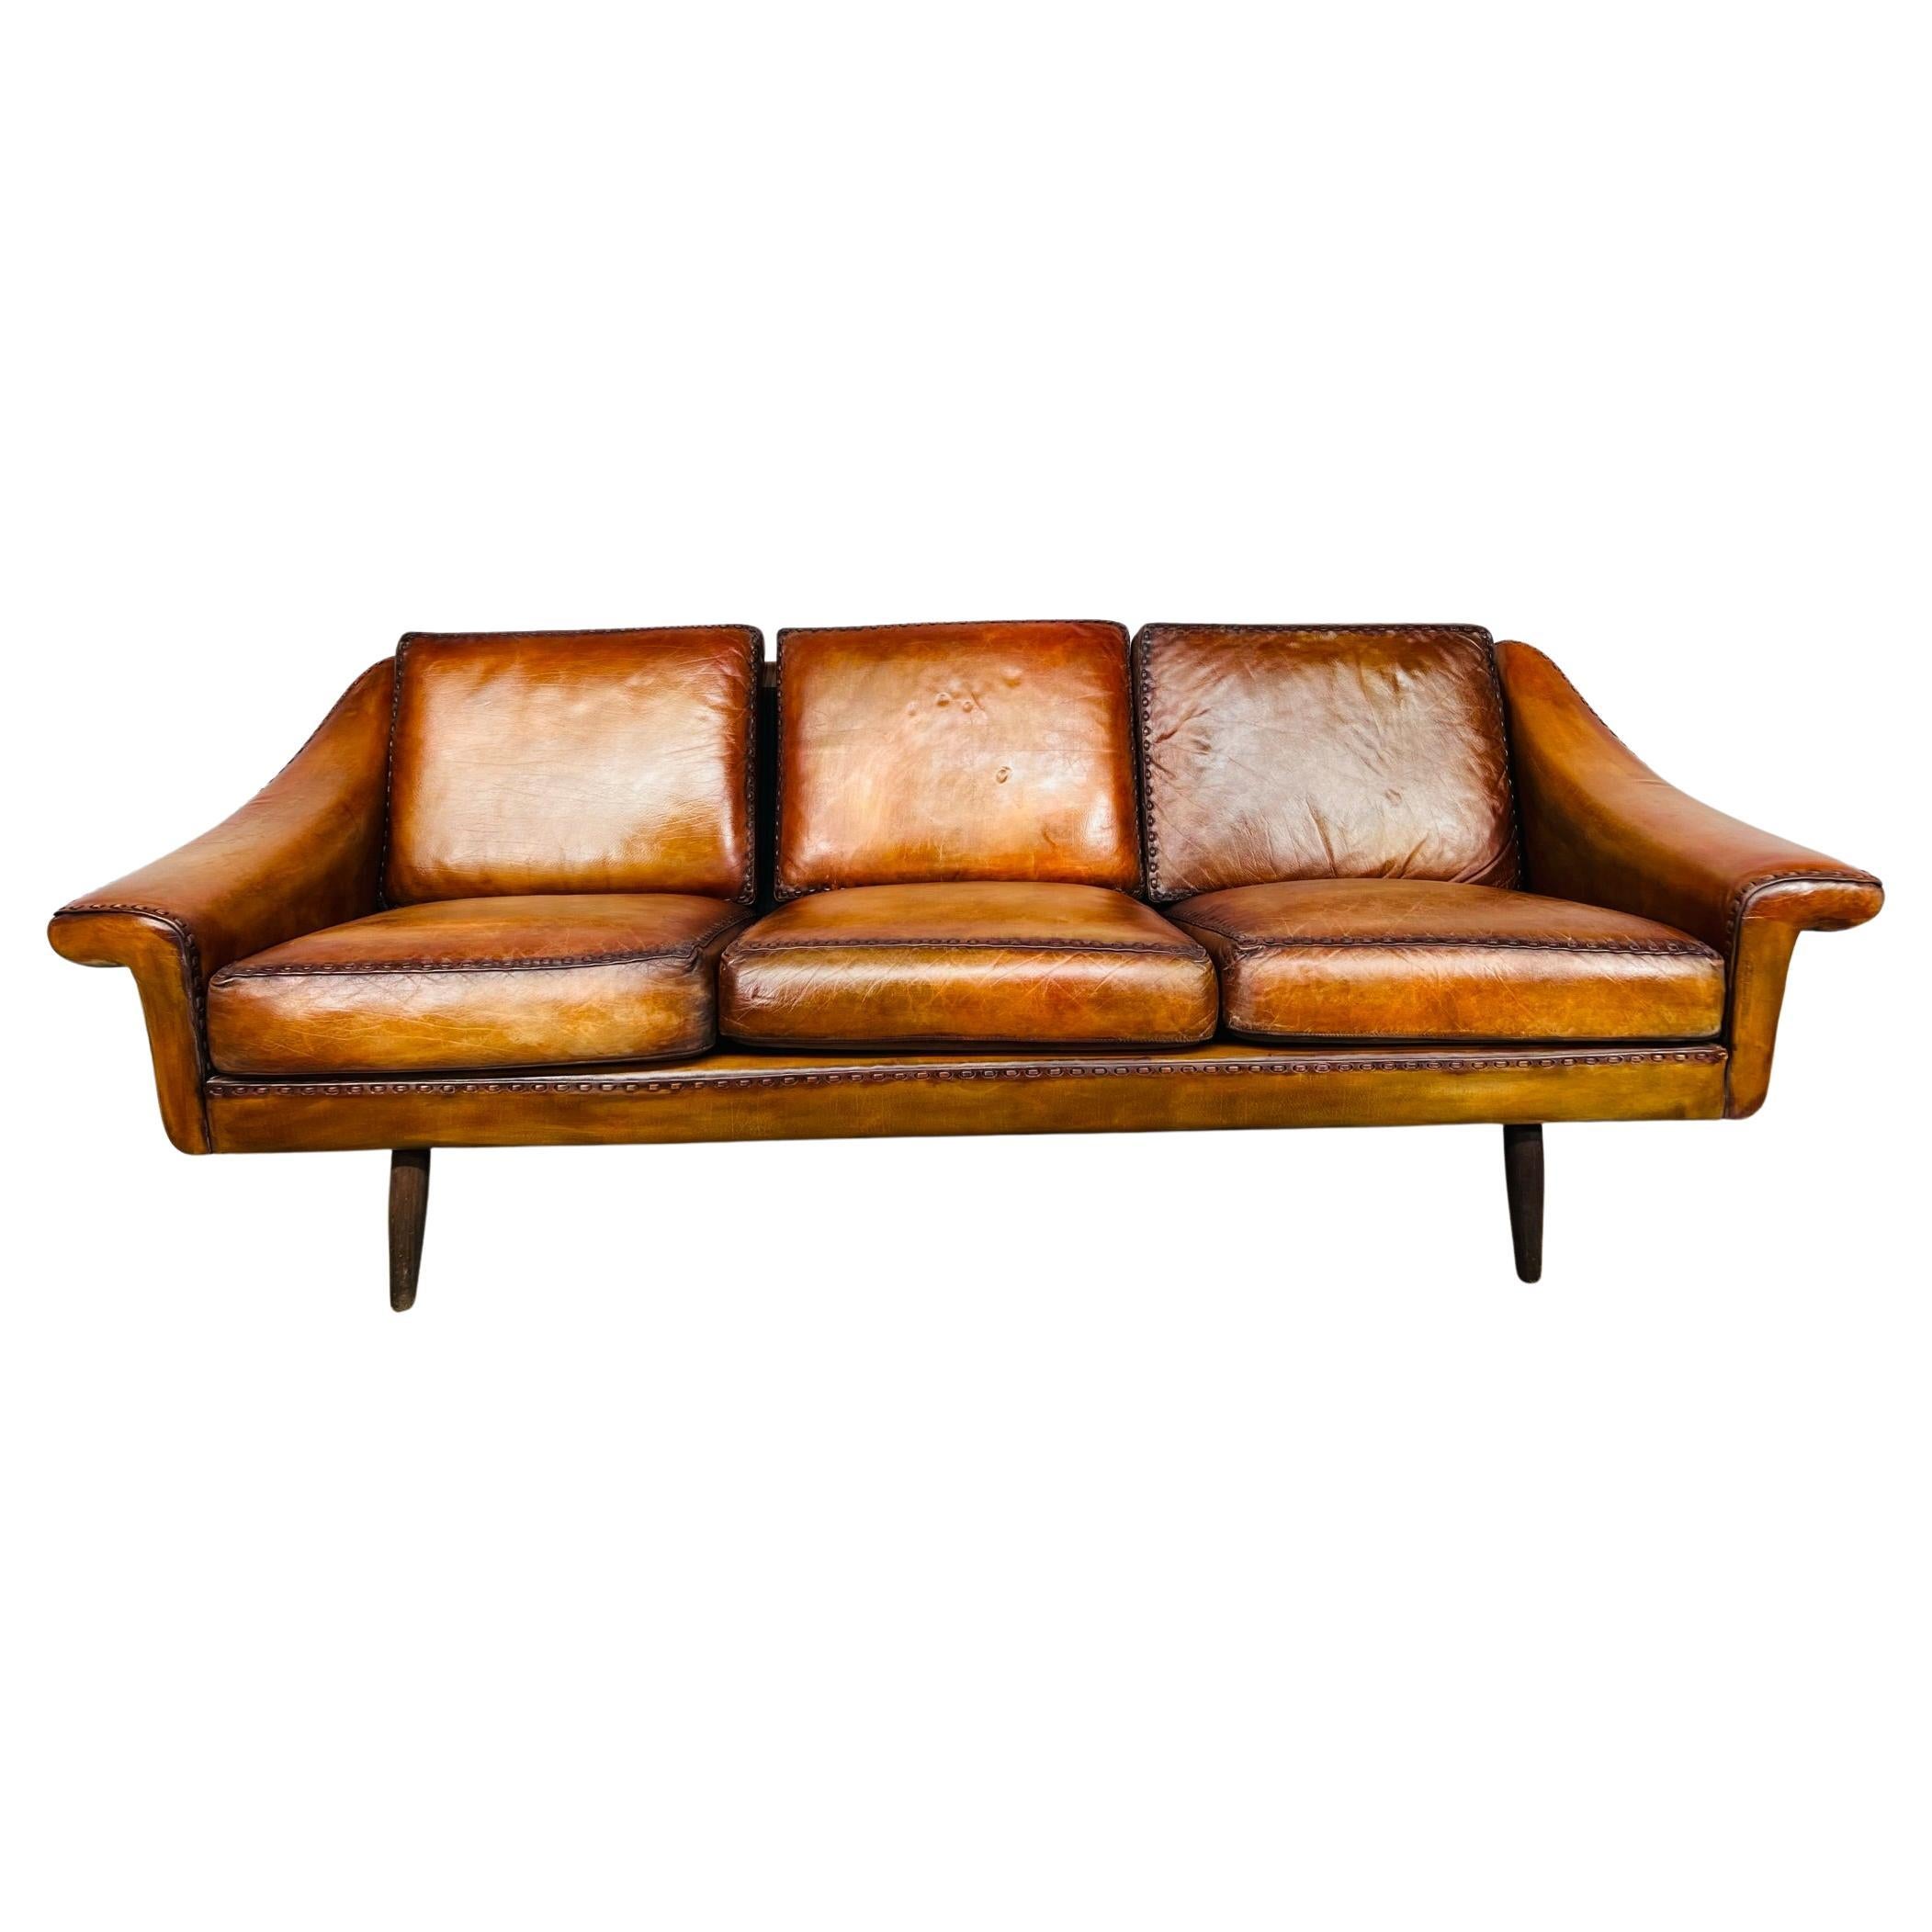 Matador Leder-Sofa mit 3 Etagen von Aage Christiansen für Eran, 1960er Jahre, #642